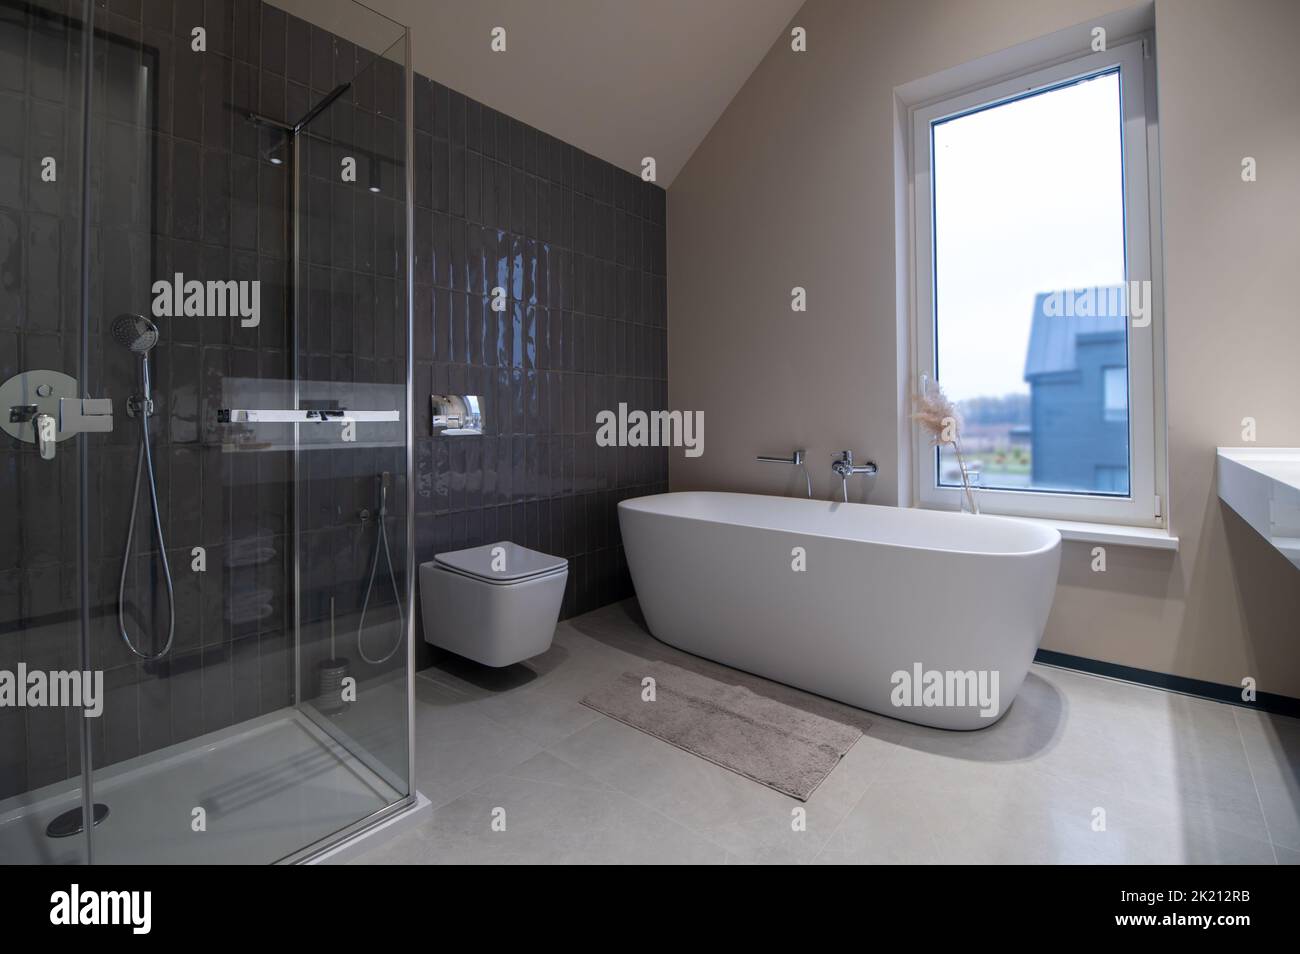 Intérieur de la salle de bains avec sanitaires ultra-modernes Banque D'Images